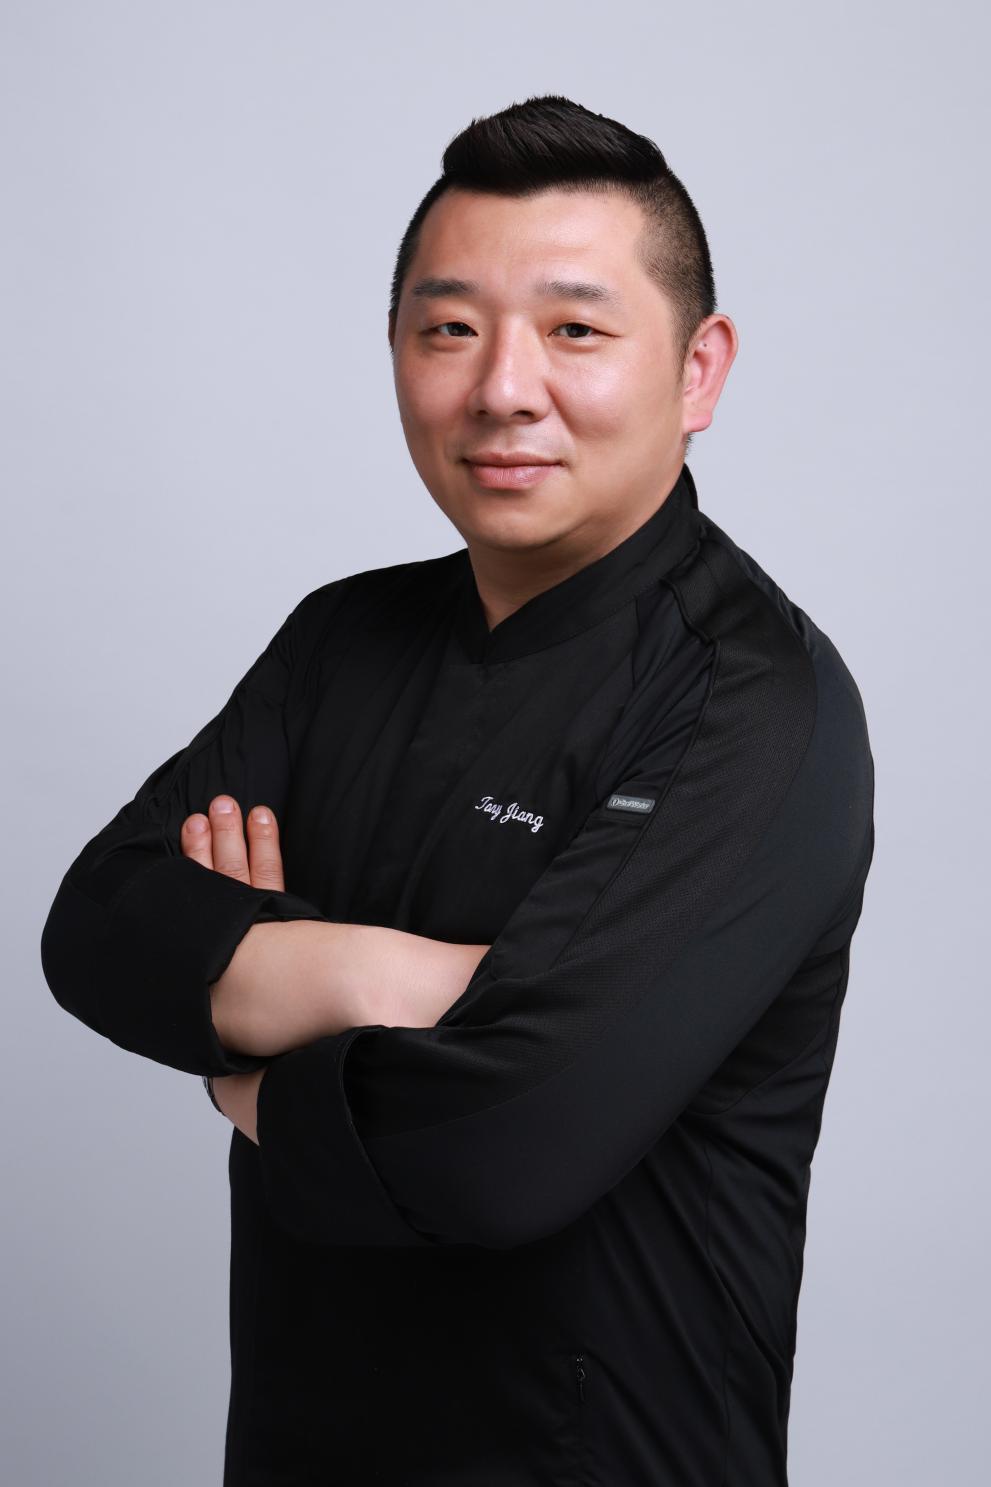 Chef Tony Jiang